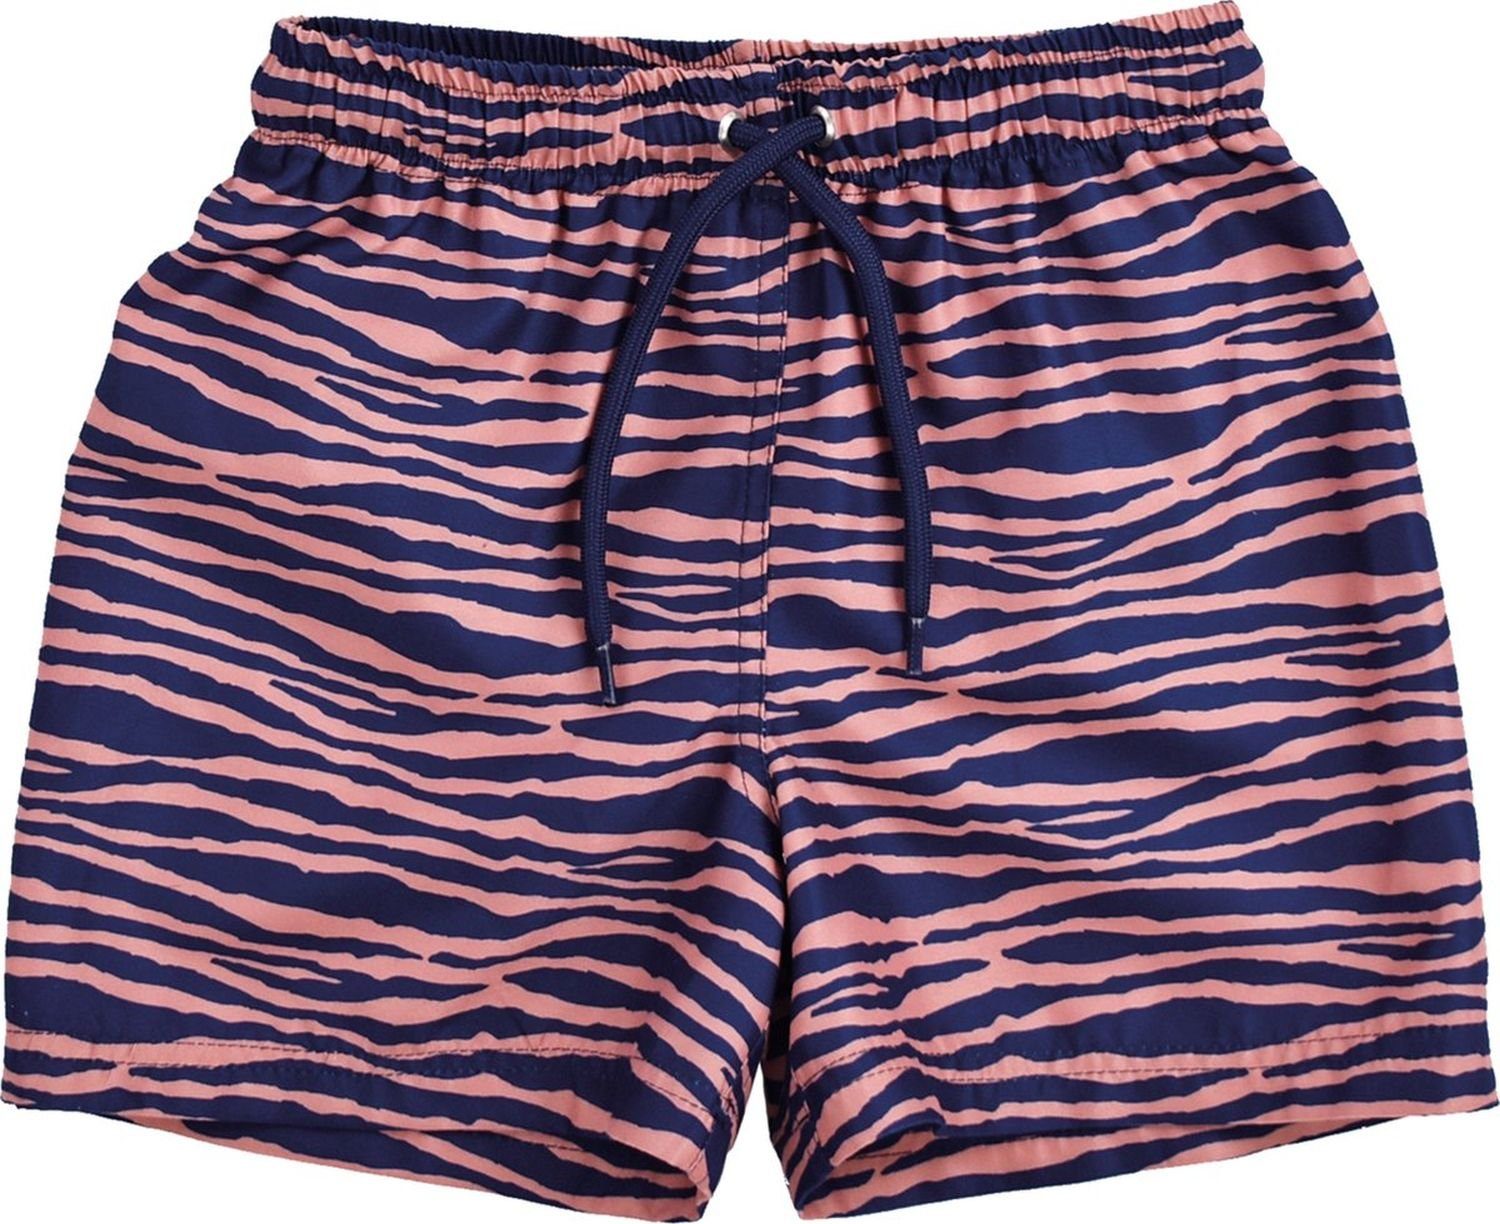 Swim Essentials Badeponcho Swim Essentials UV Schwimmhose, für Jungen blau/orange Zebra Muster, 100% PL | Badeponchos